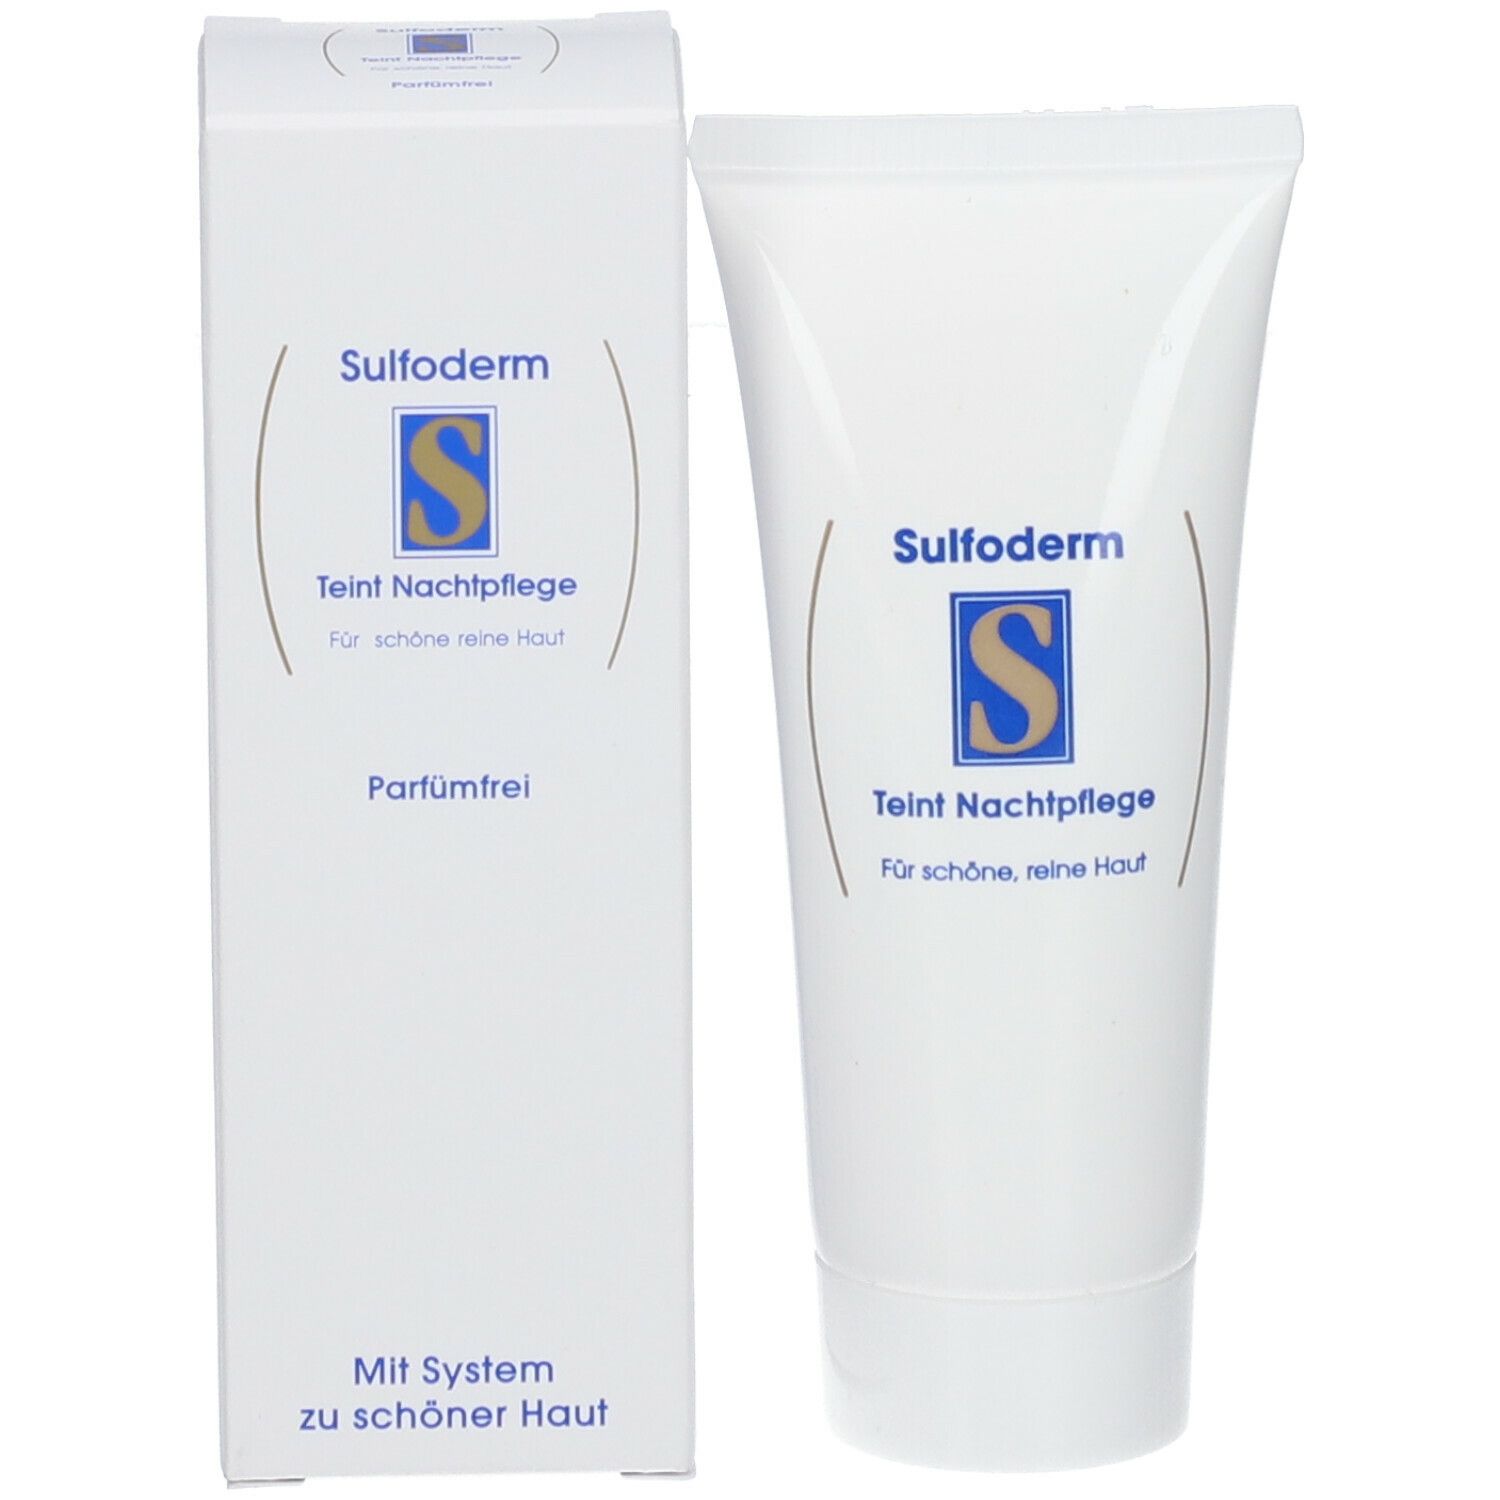 Sulfoderm® S Teint Nachtpflege parfümfrei